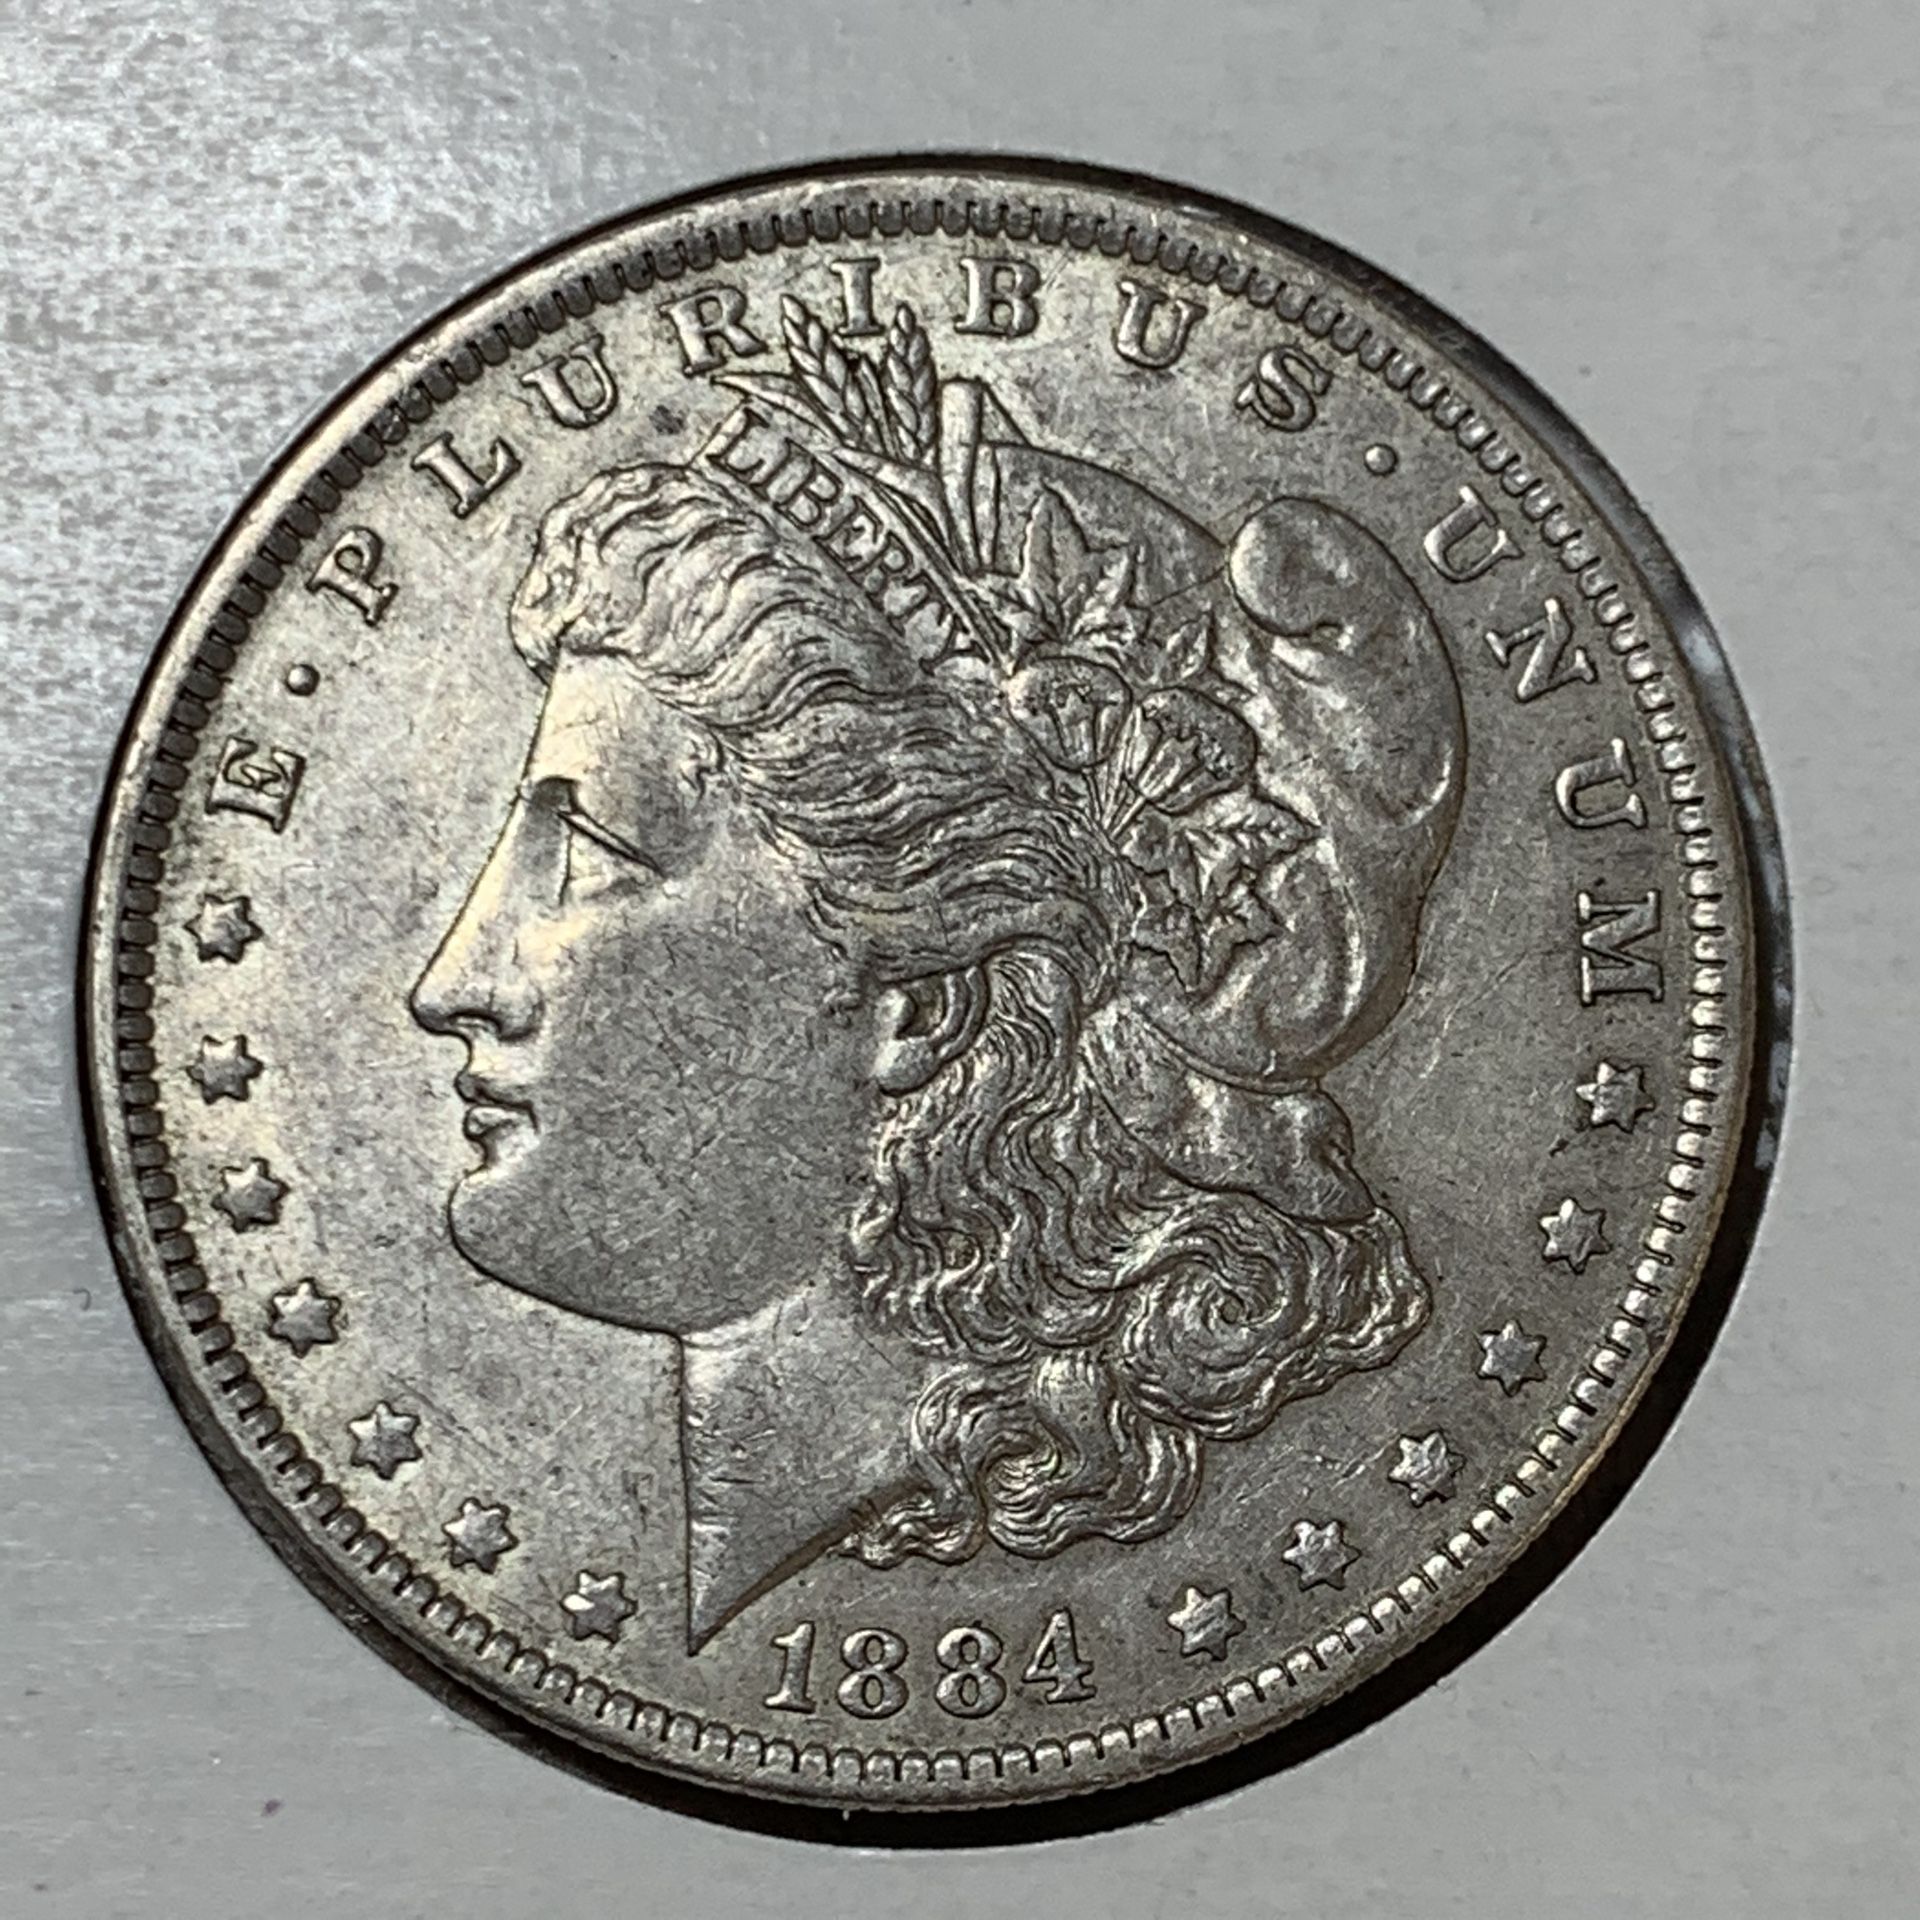 1884-O Morgan silver dollar